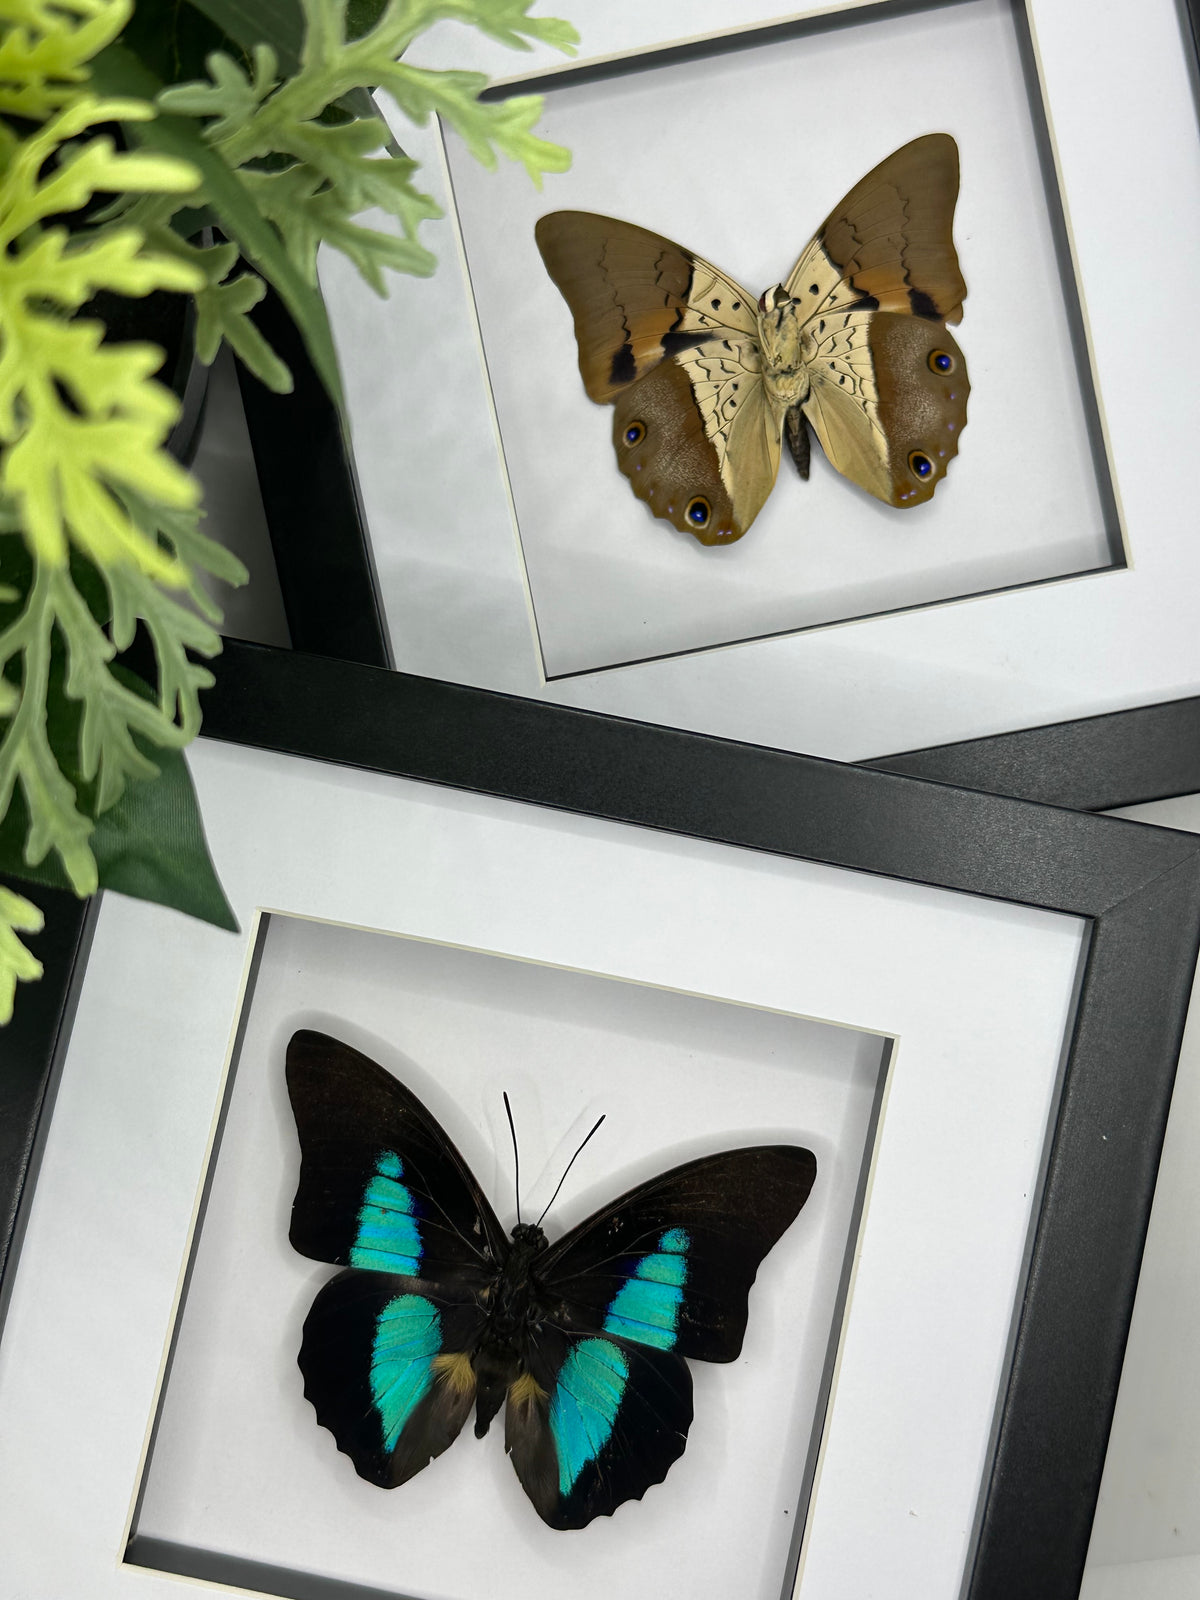 Prepona Dexamenes Butterfly in a frame